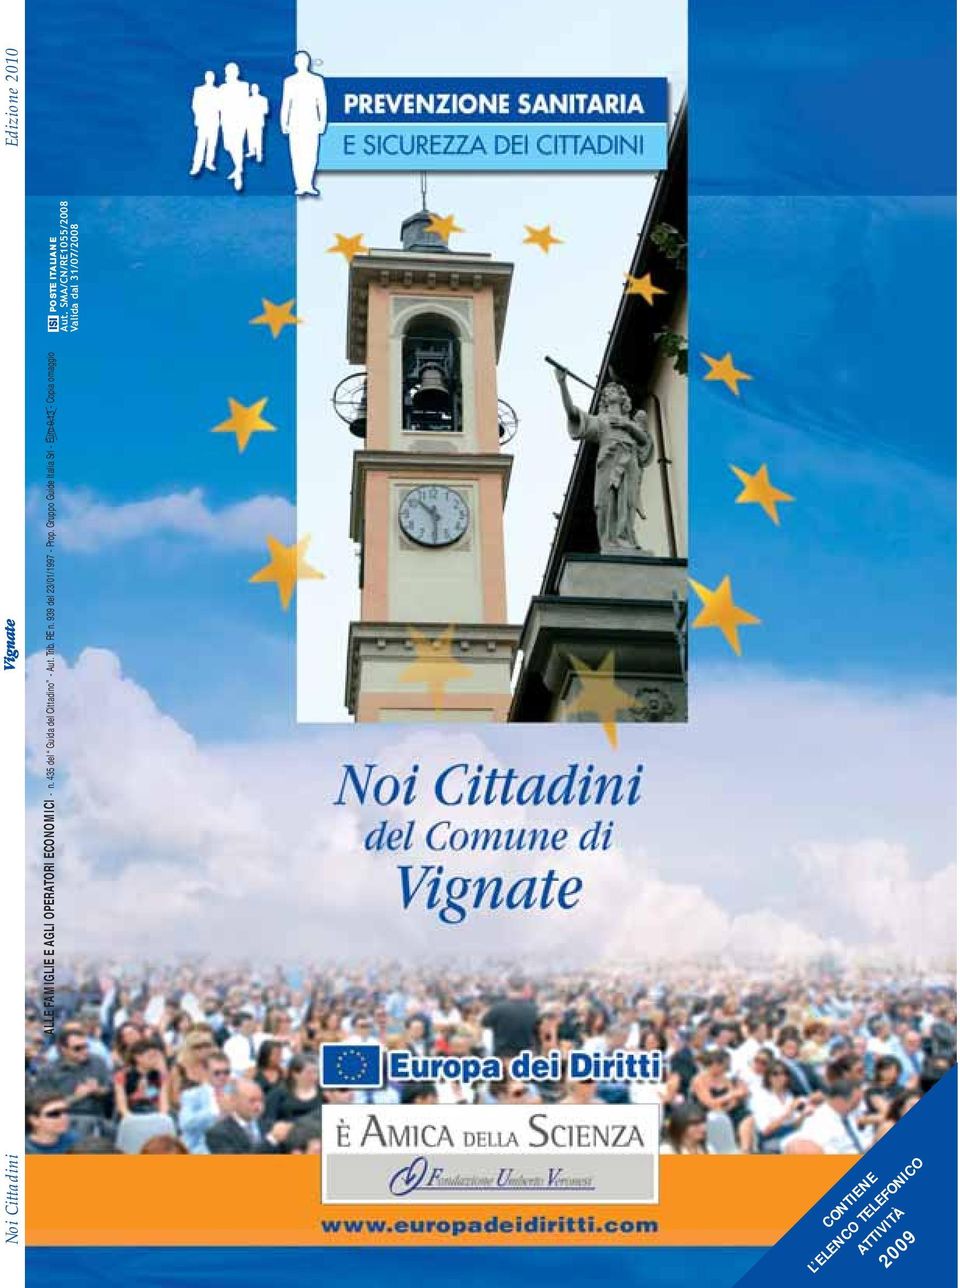 Gruppo Guide Italia Srl - Euro 0,13 - Copia omaggio ISI POSTE ITALIANE Aut.